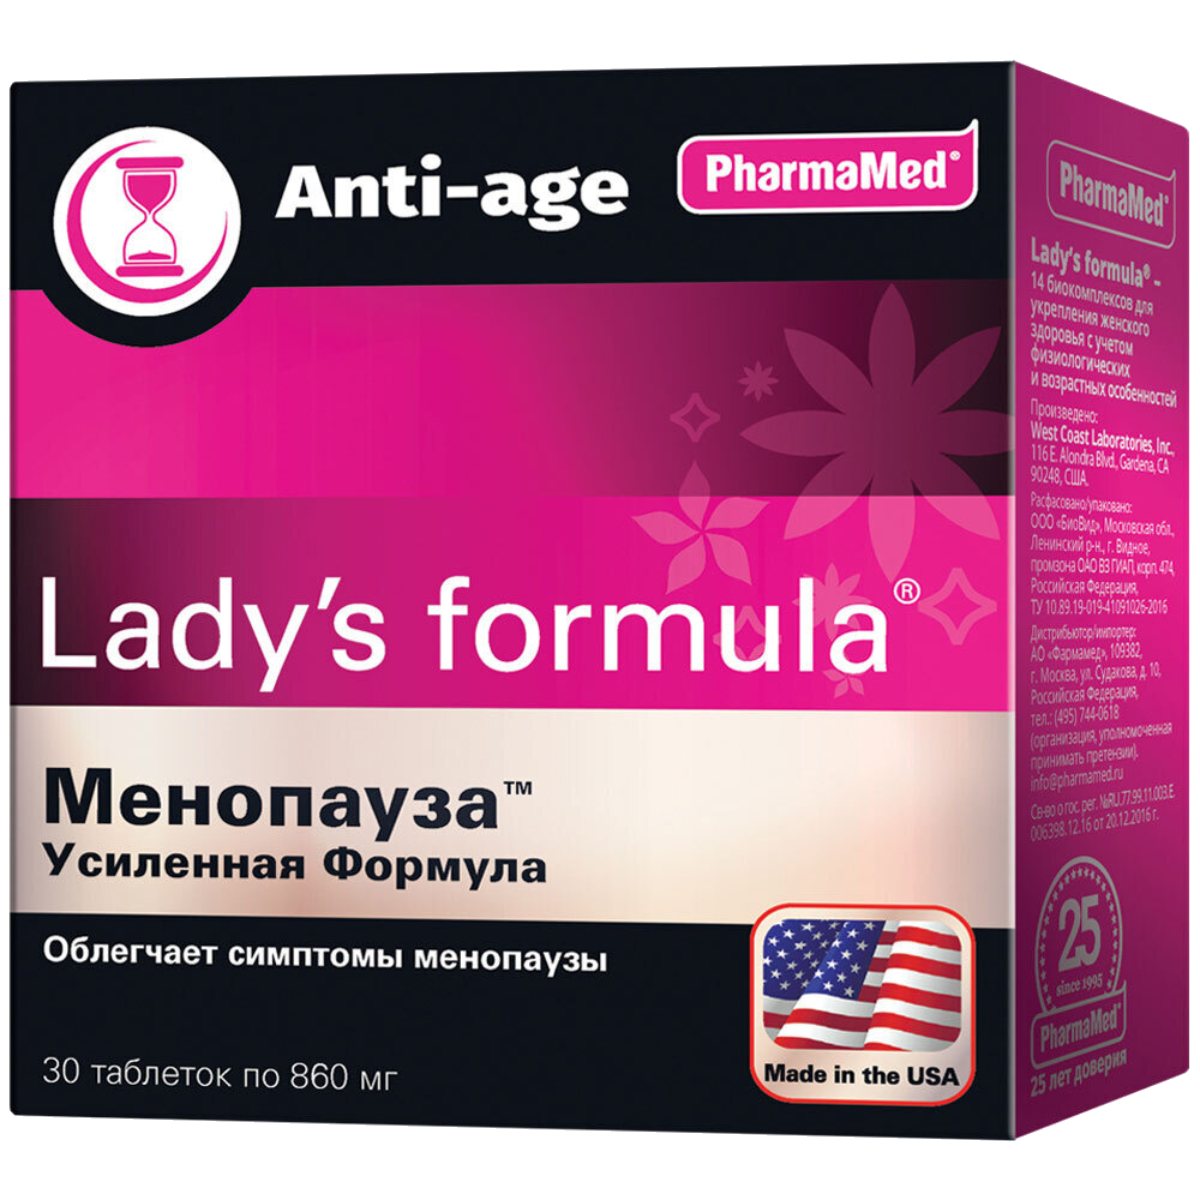 Lady's Formula менопауза, усиленная формула, 30 таблеток, PharmaMed - фото 1